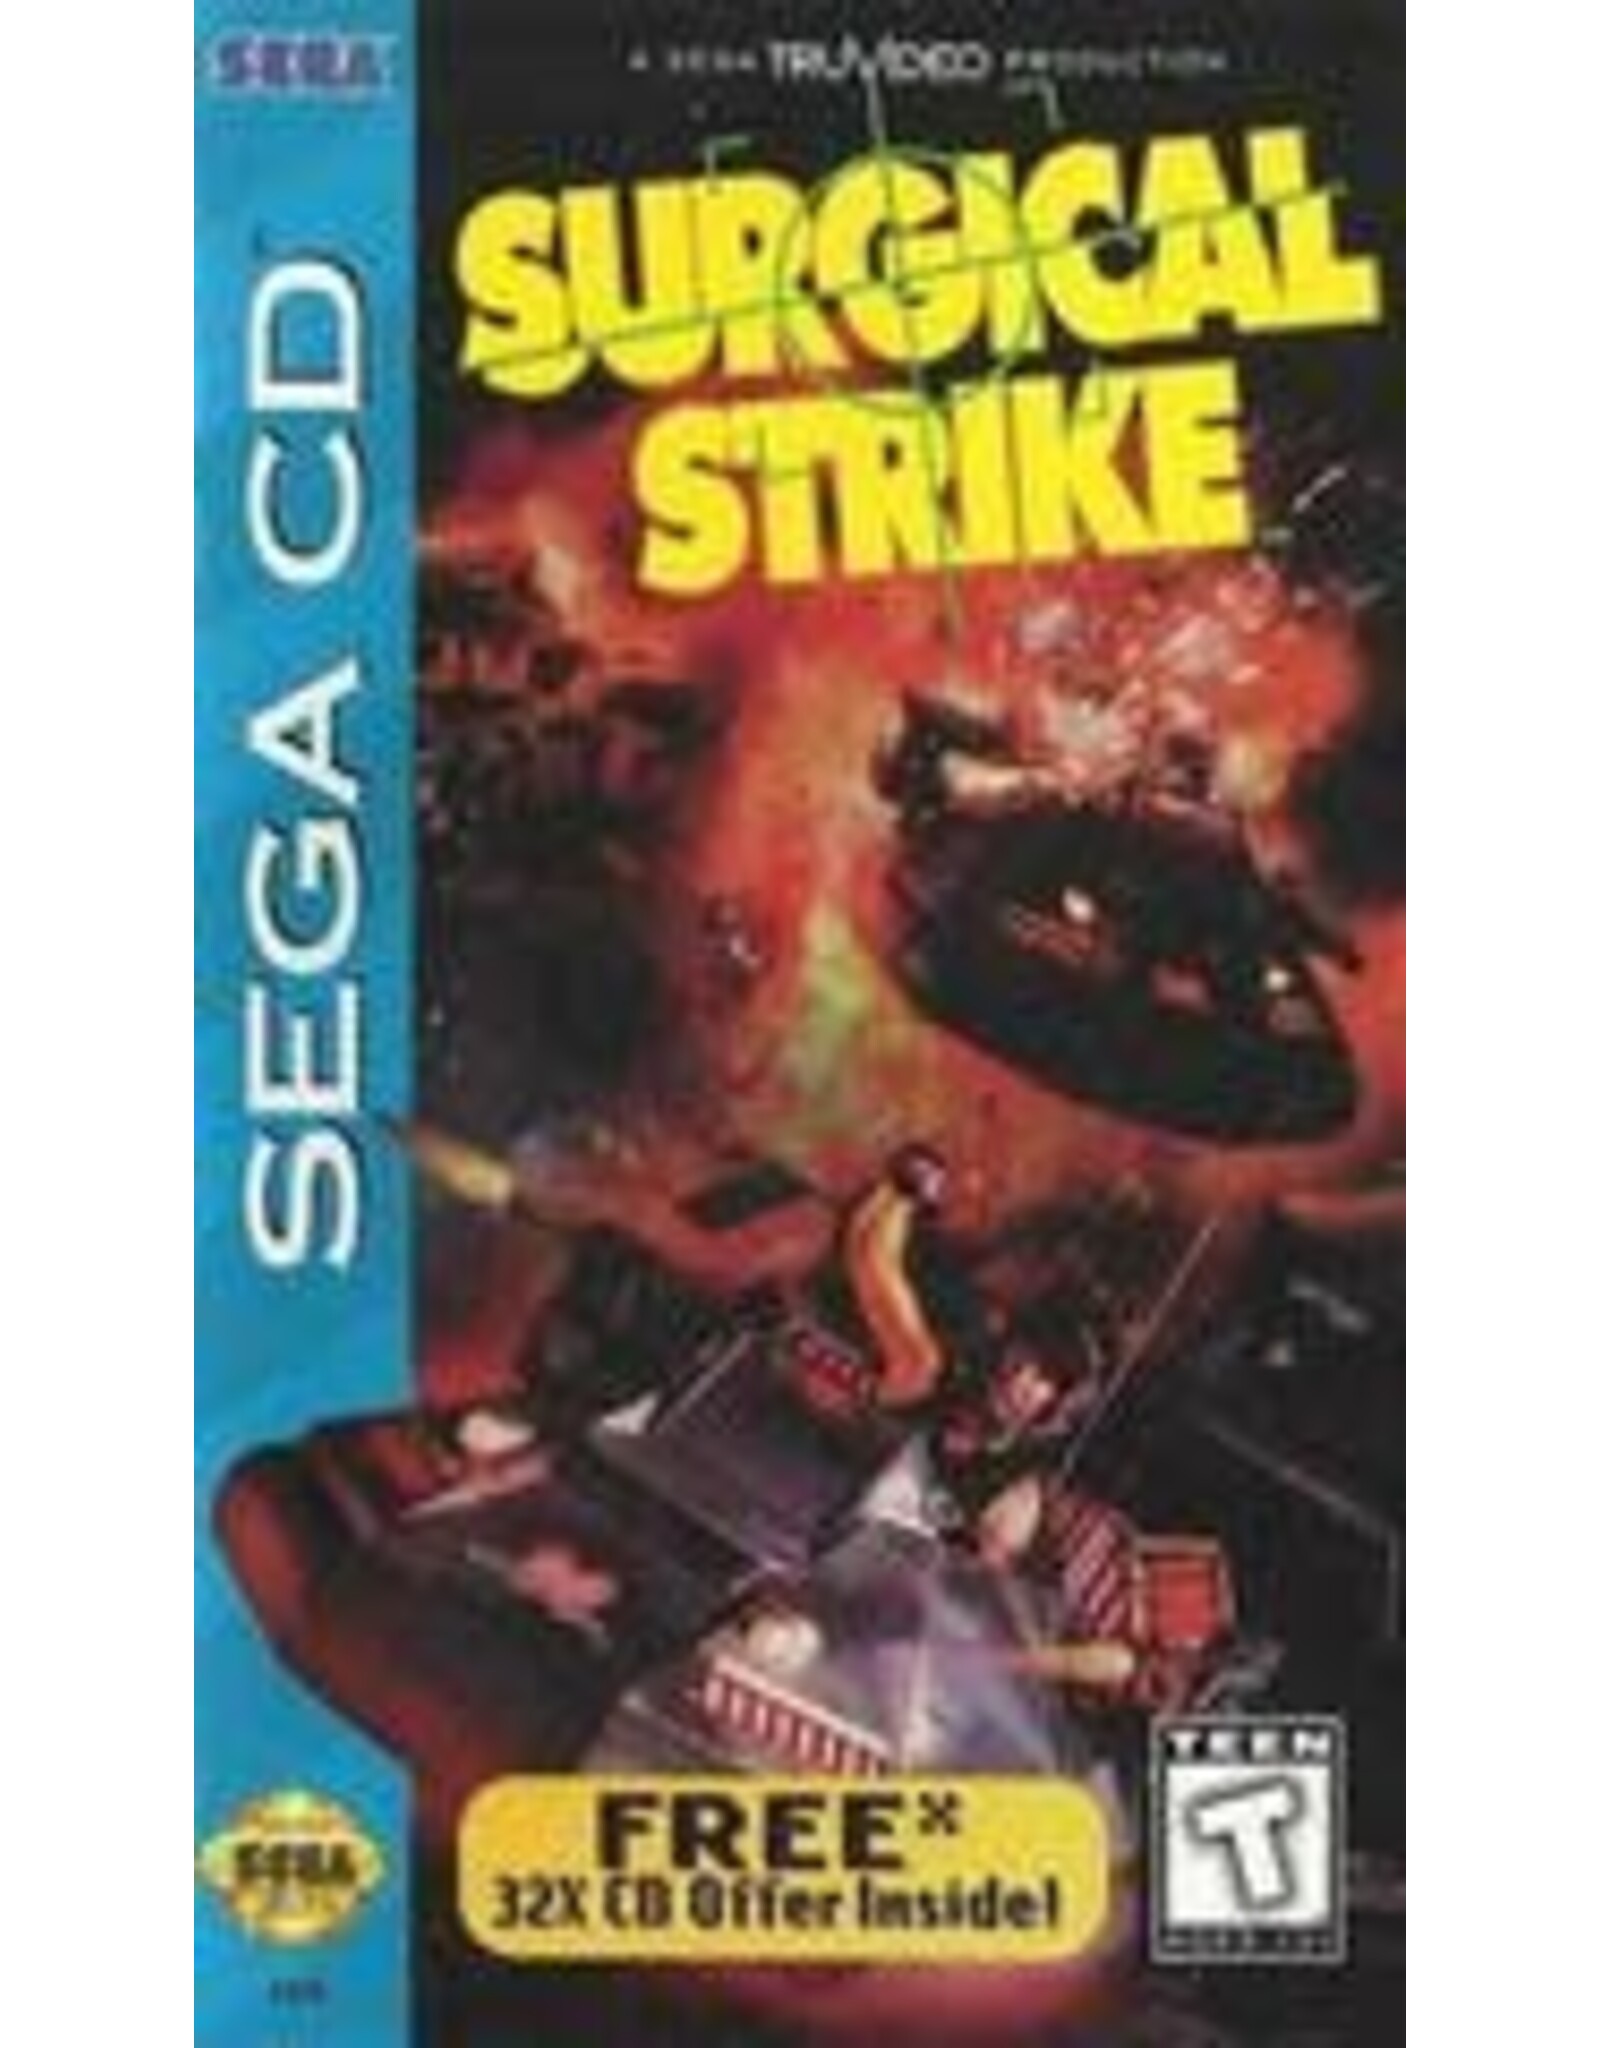 Sega CD Surgical Strike (CiB, Damaged Case and Manual)